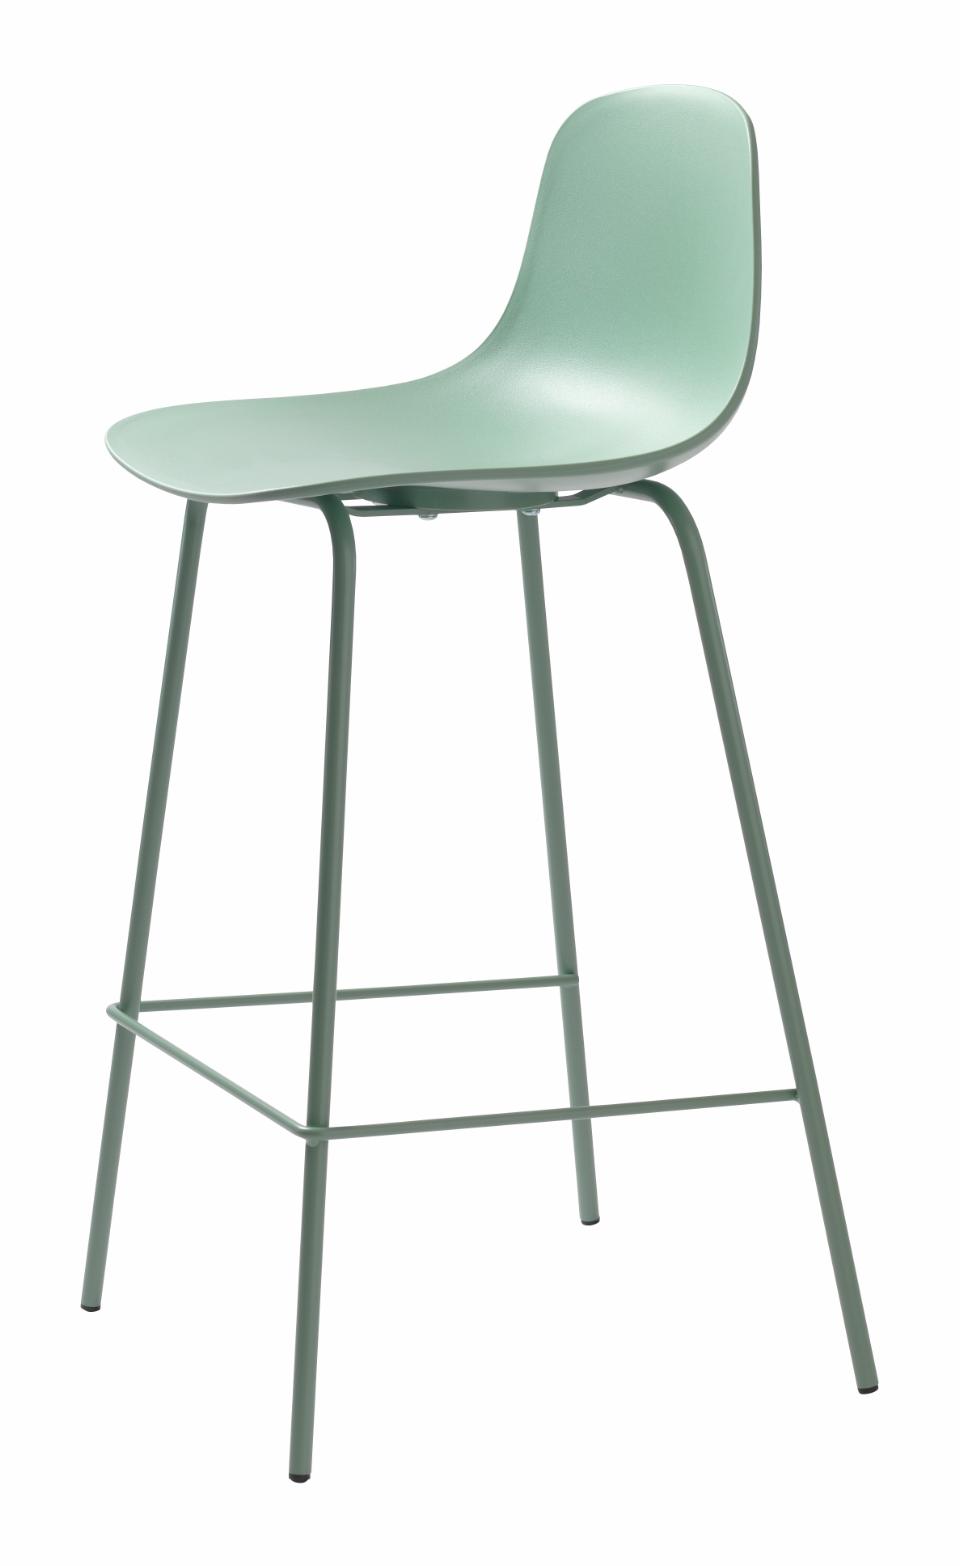 2 stk. Pacey barstole i farven støvet grøn